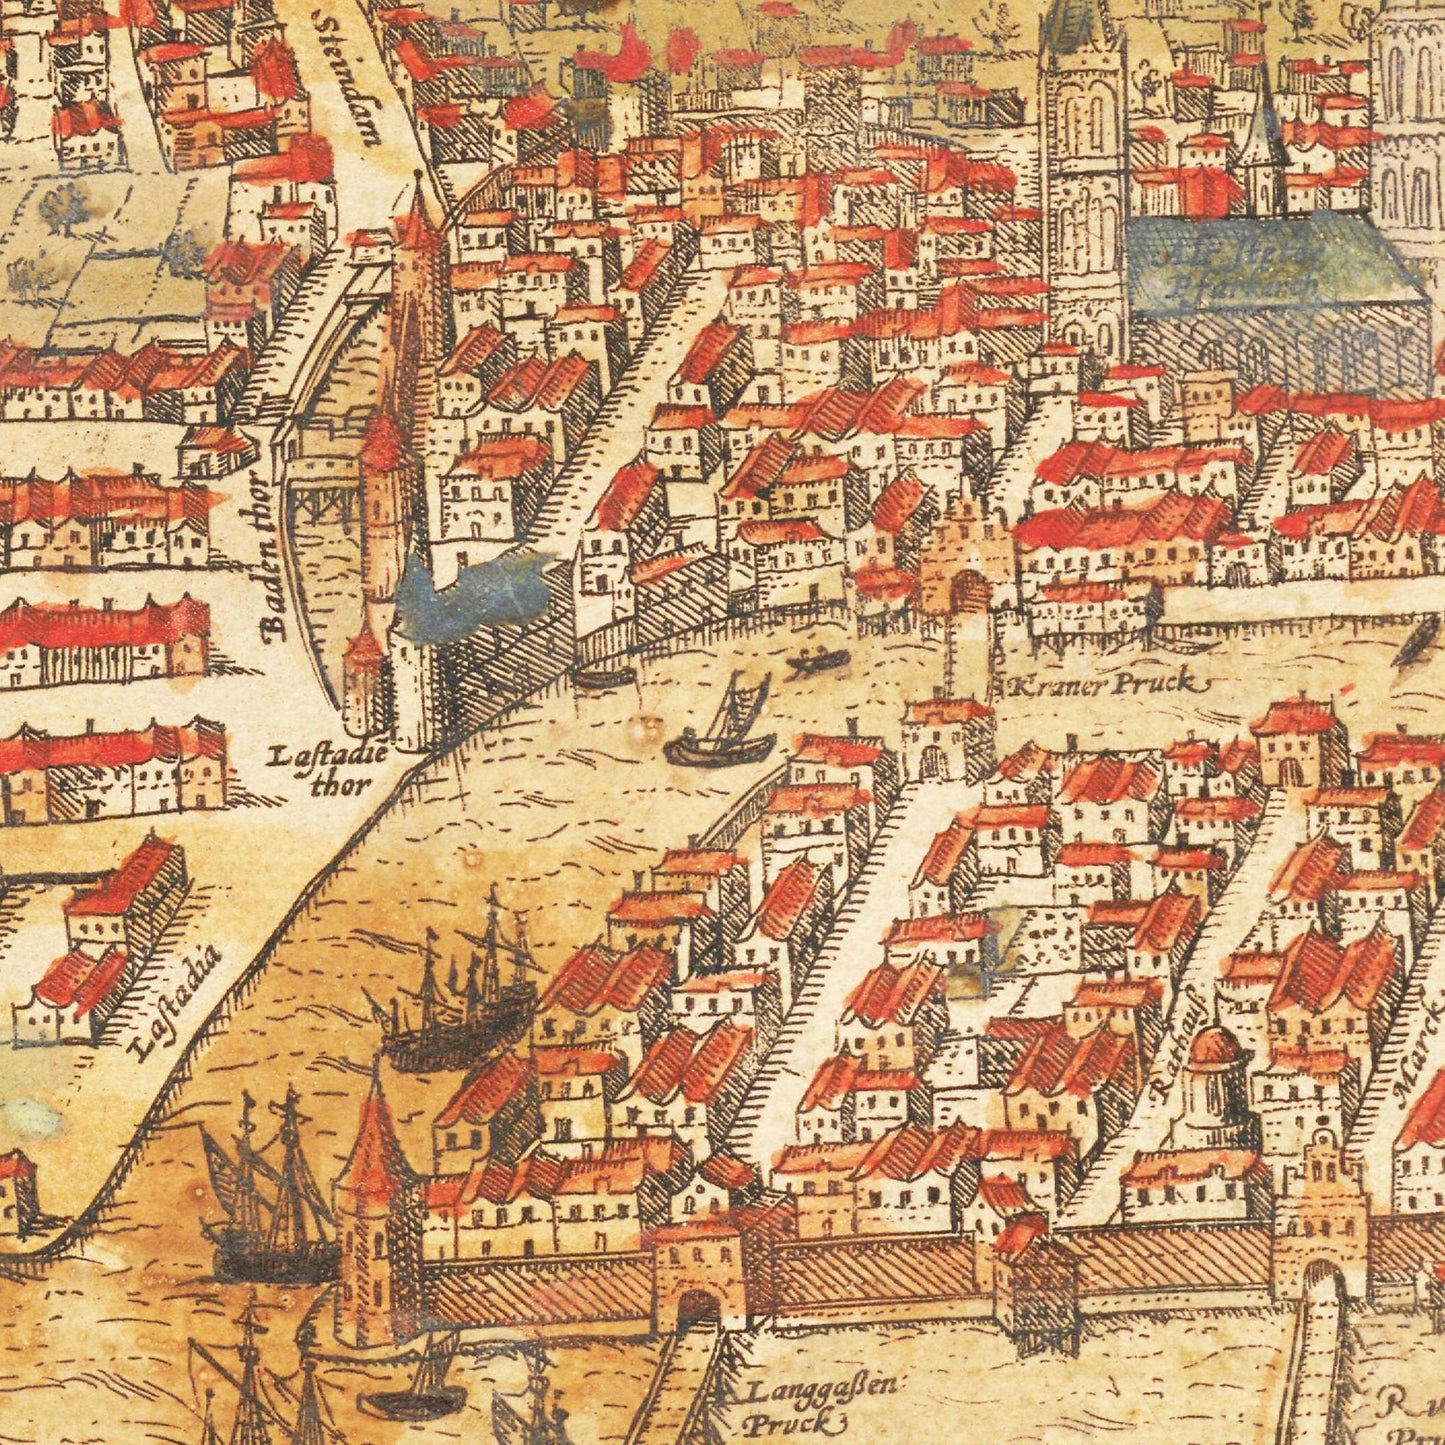 Historische Stadtansicht Königsberg um 1582